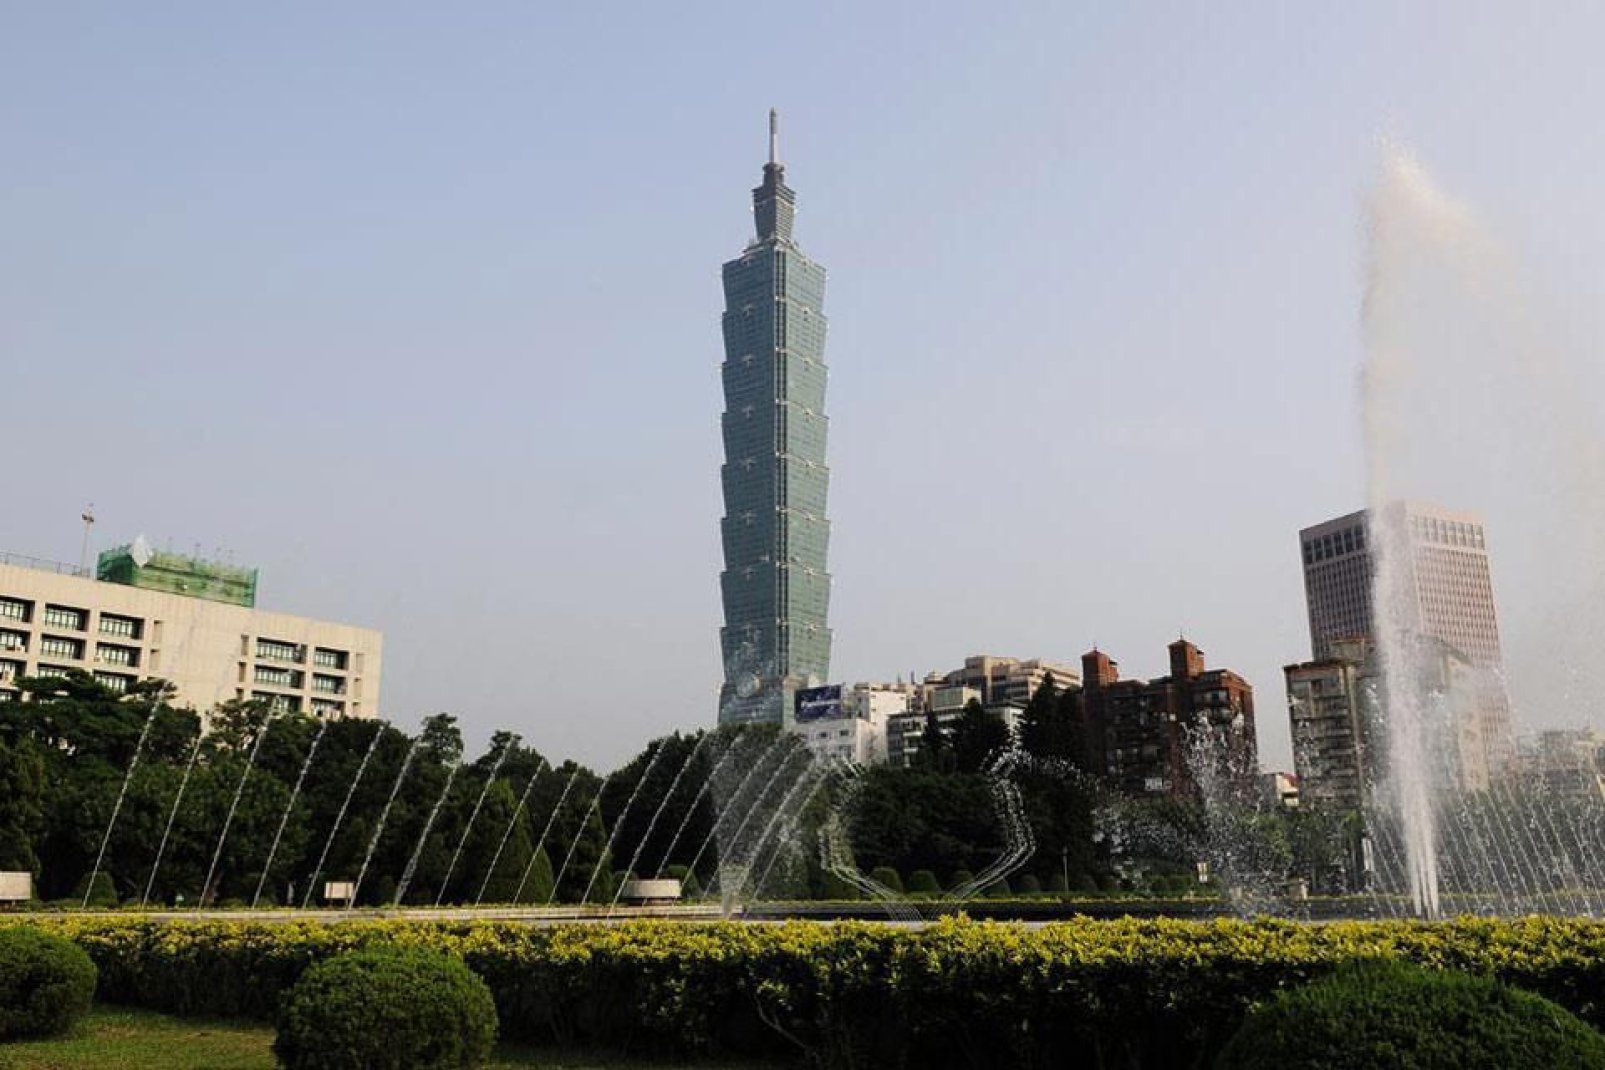 Deuxième plus haut gratte-ciel du monde avec ses 508 mètres, c'est un véritable prodige technique, bâtie comme une tige de bambou constituée de 8 sections, chiffre porte-bonheur.